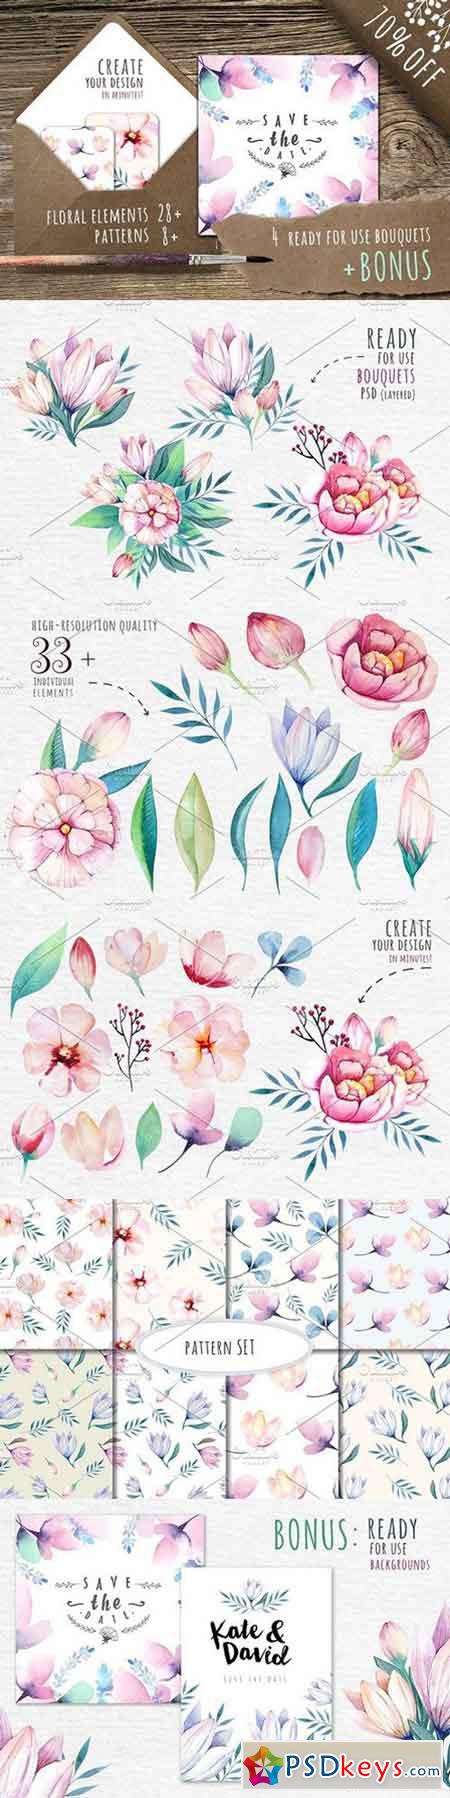 Watercolour floral DIY+Bonus 343520